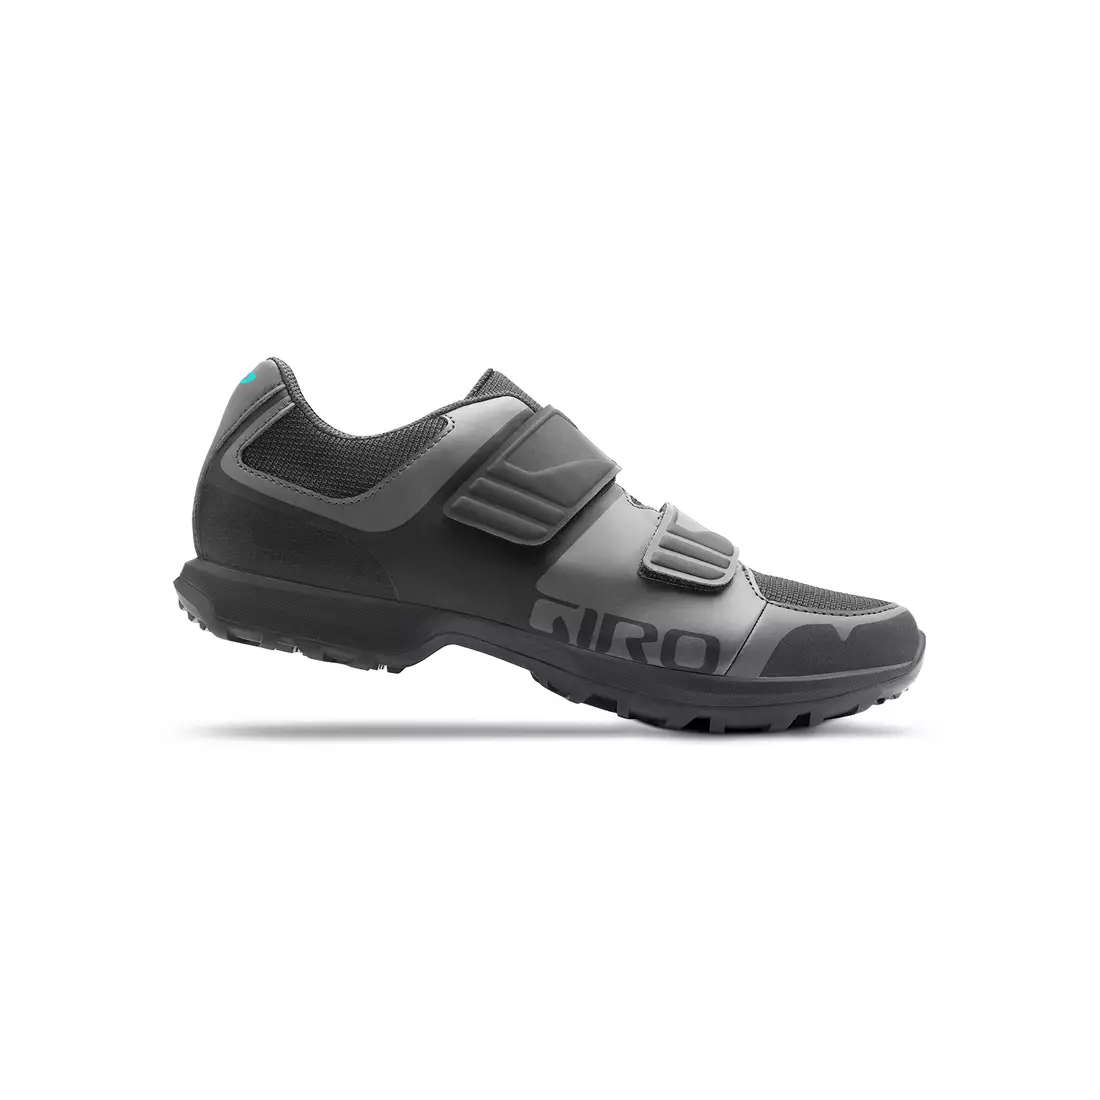 Pantofi de drumeție pentru femei GIRO BERM W titanium dark shadow 